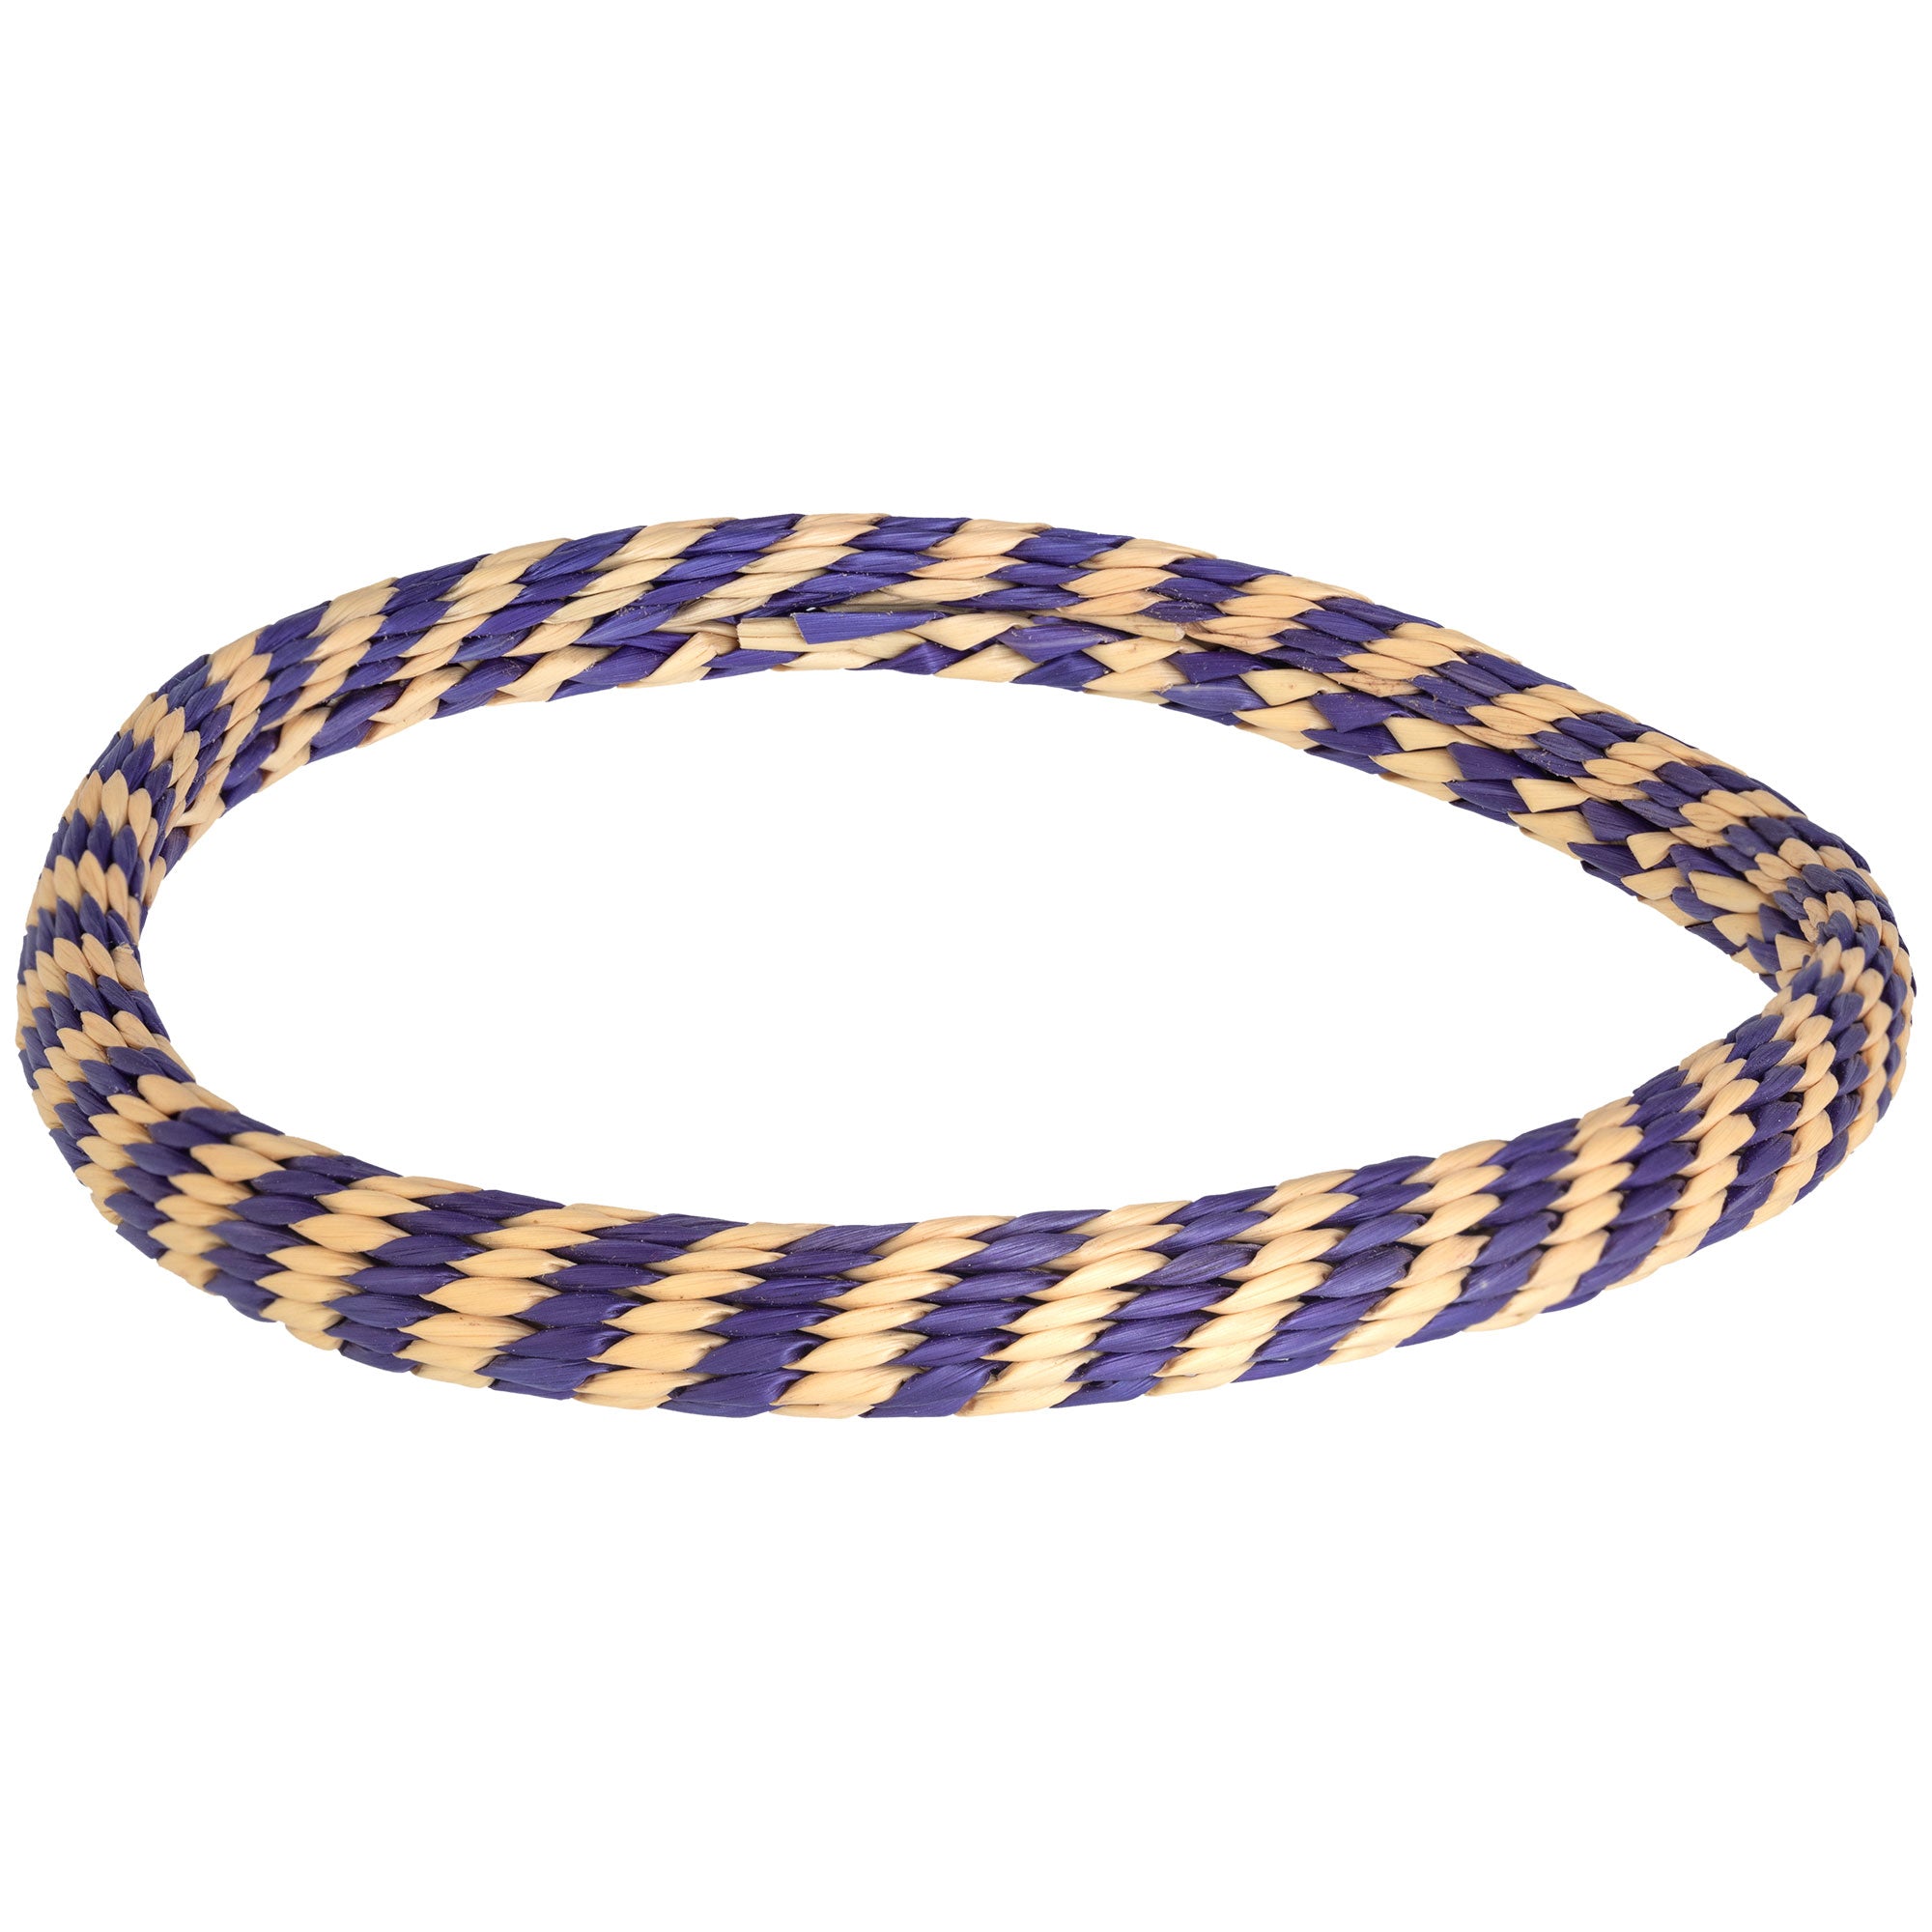 Handmade Woven Grass Bracelet - Single